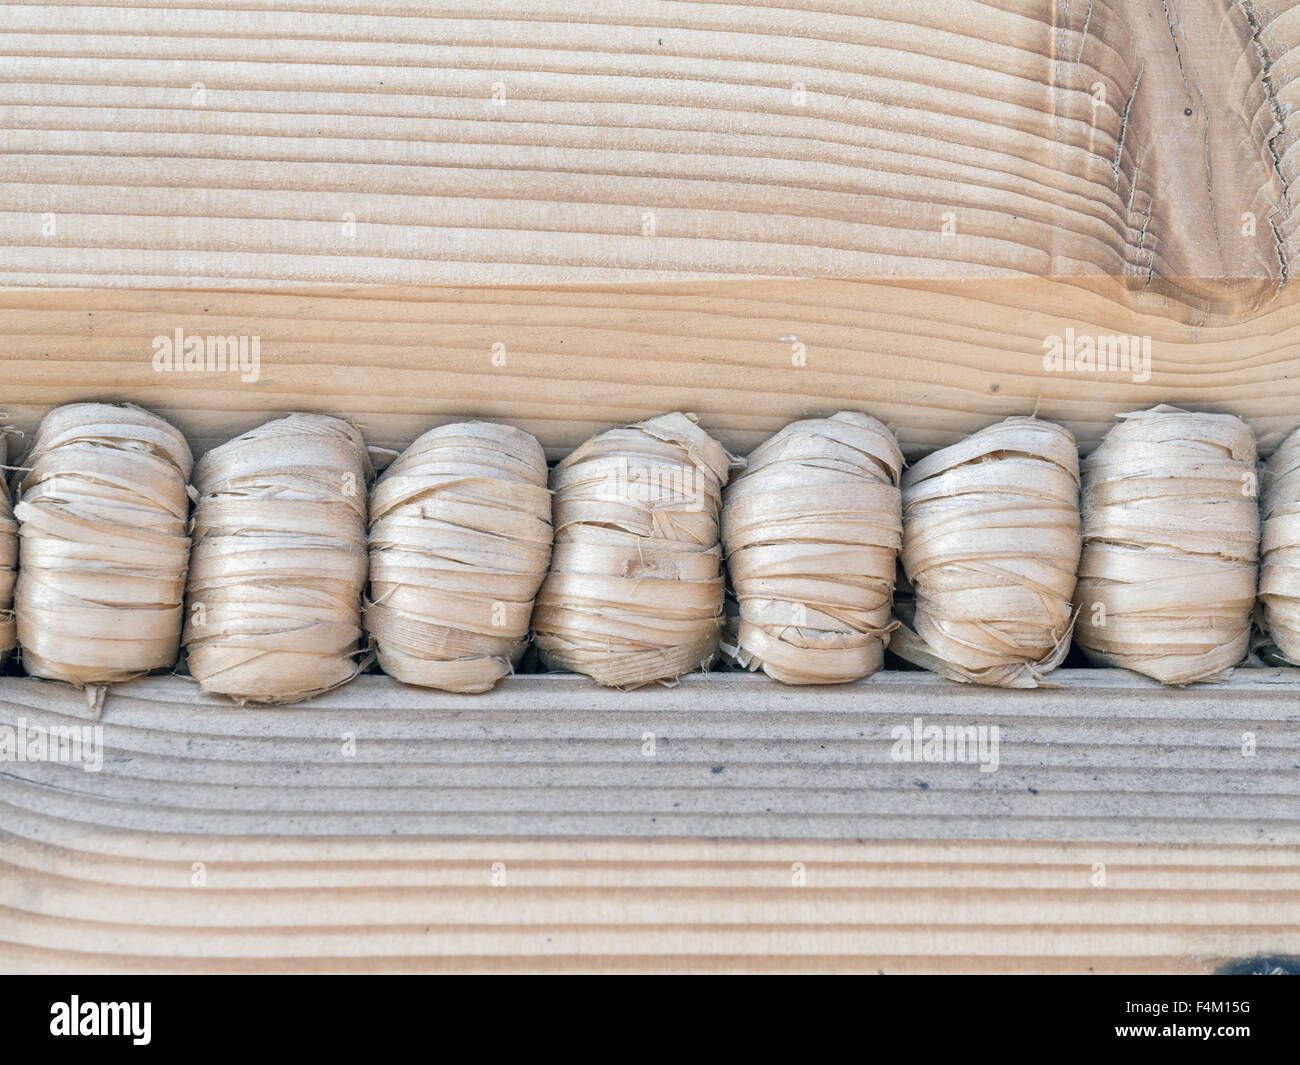 Primer plano de una cabaña de madera pared con cuerda de cáñamo adherente Foto de stock